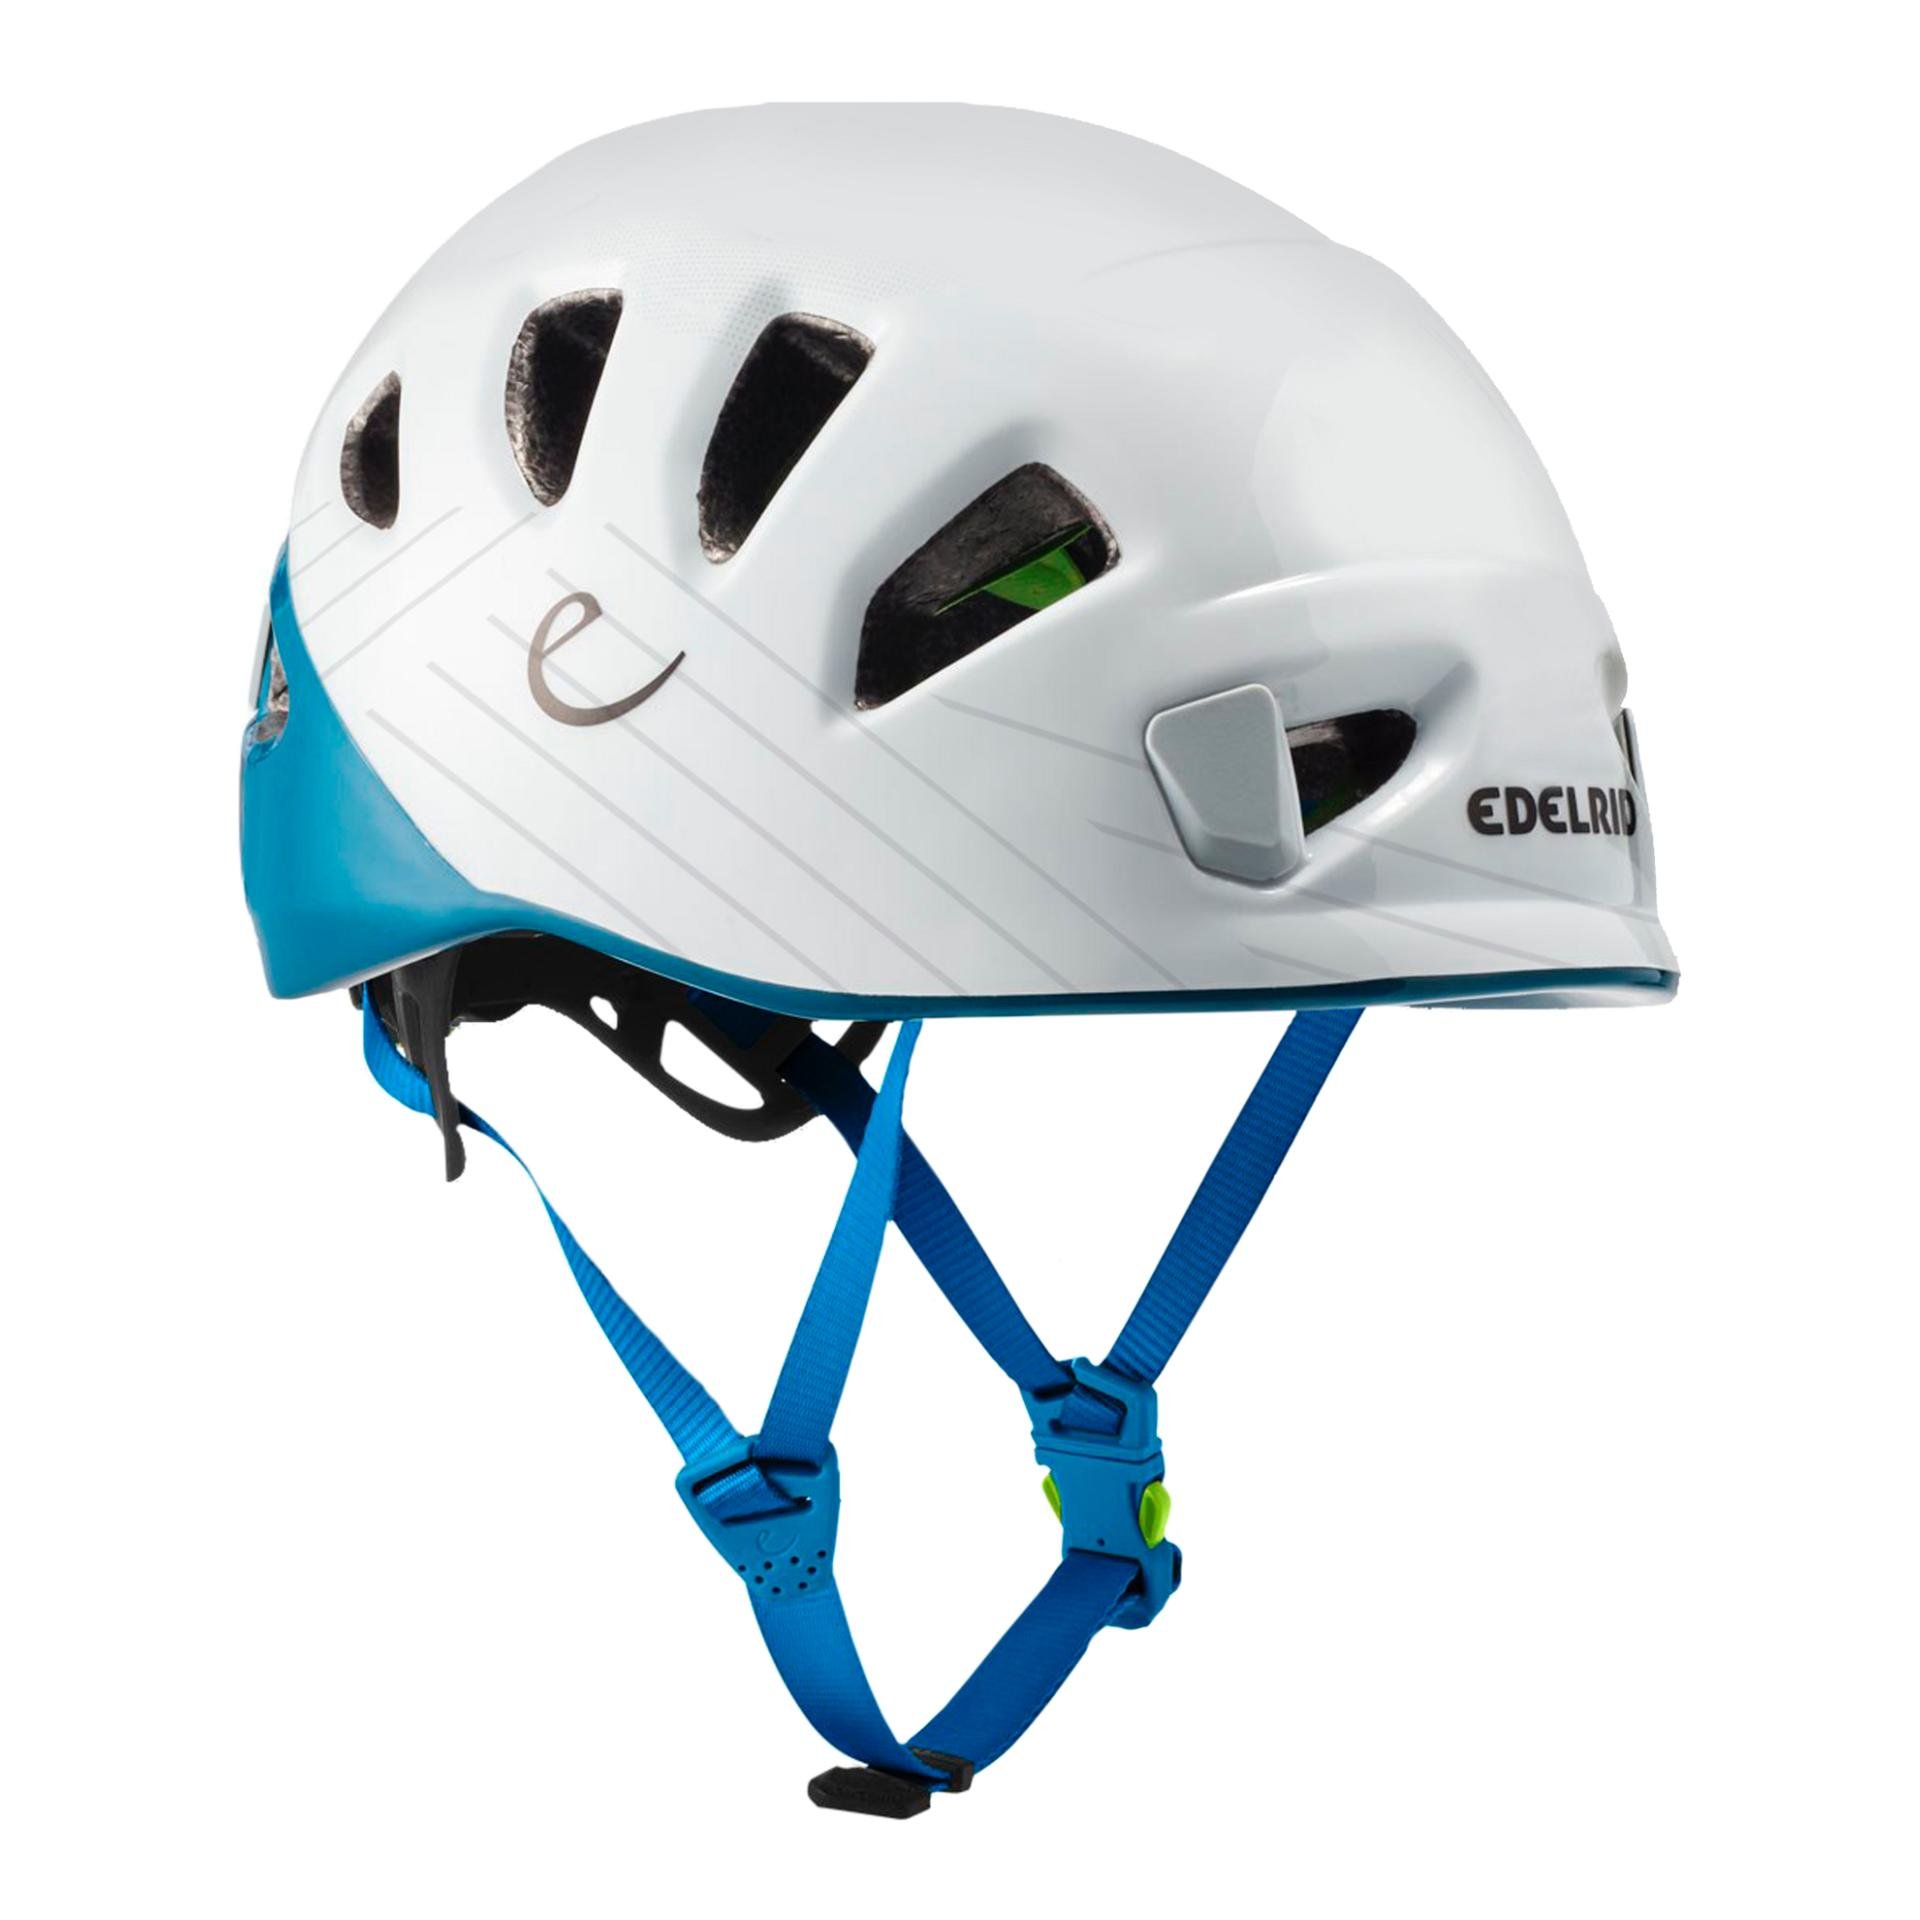 Shield climbing helmet